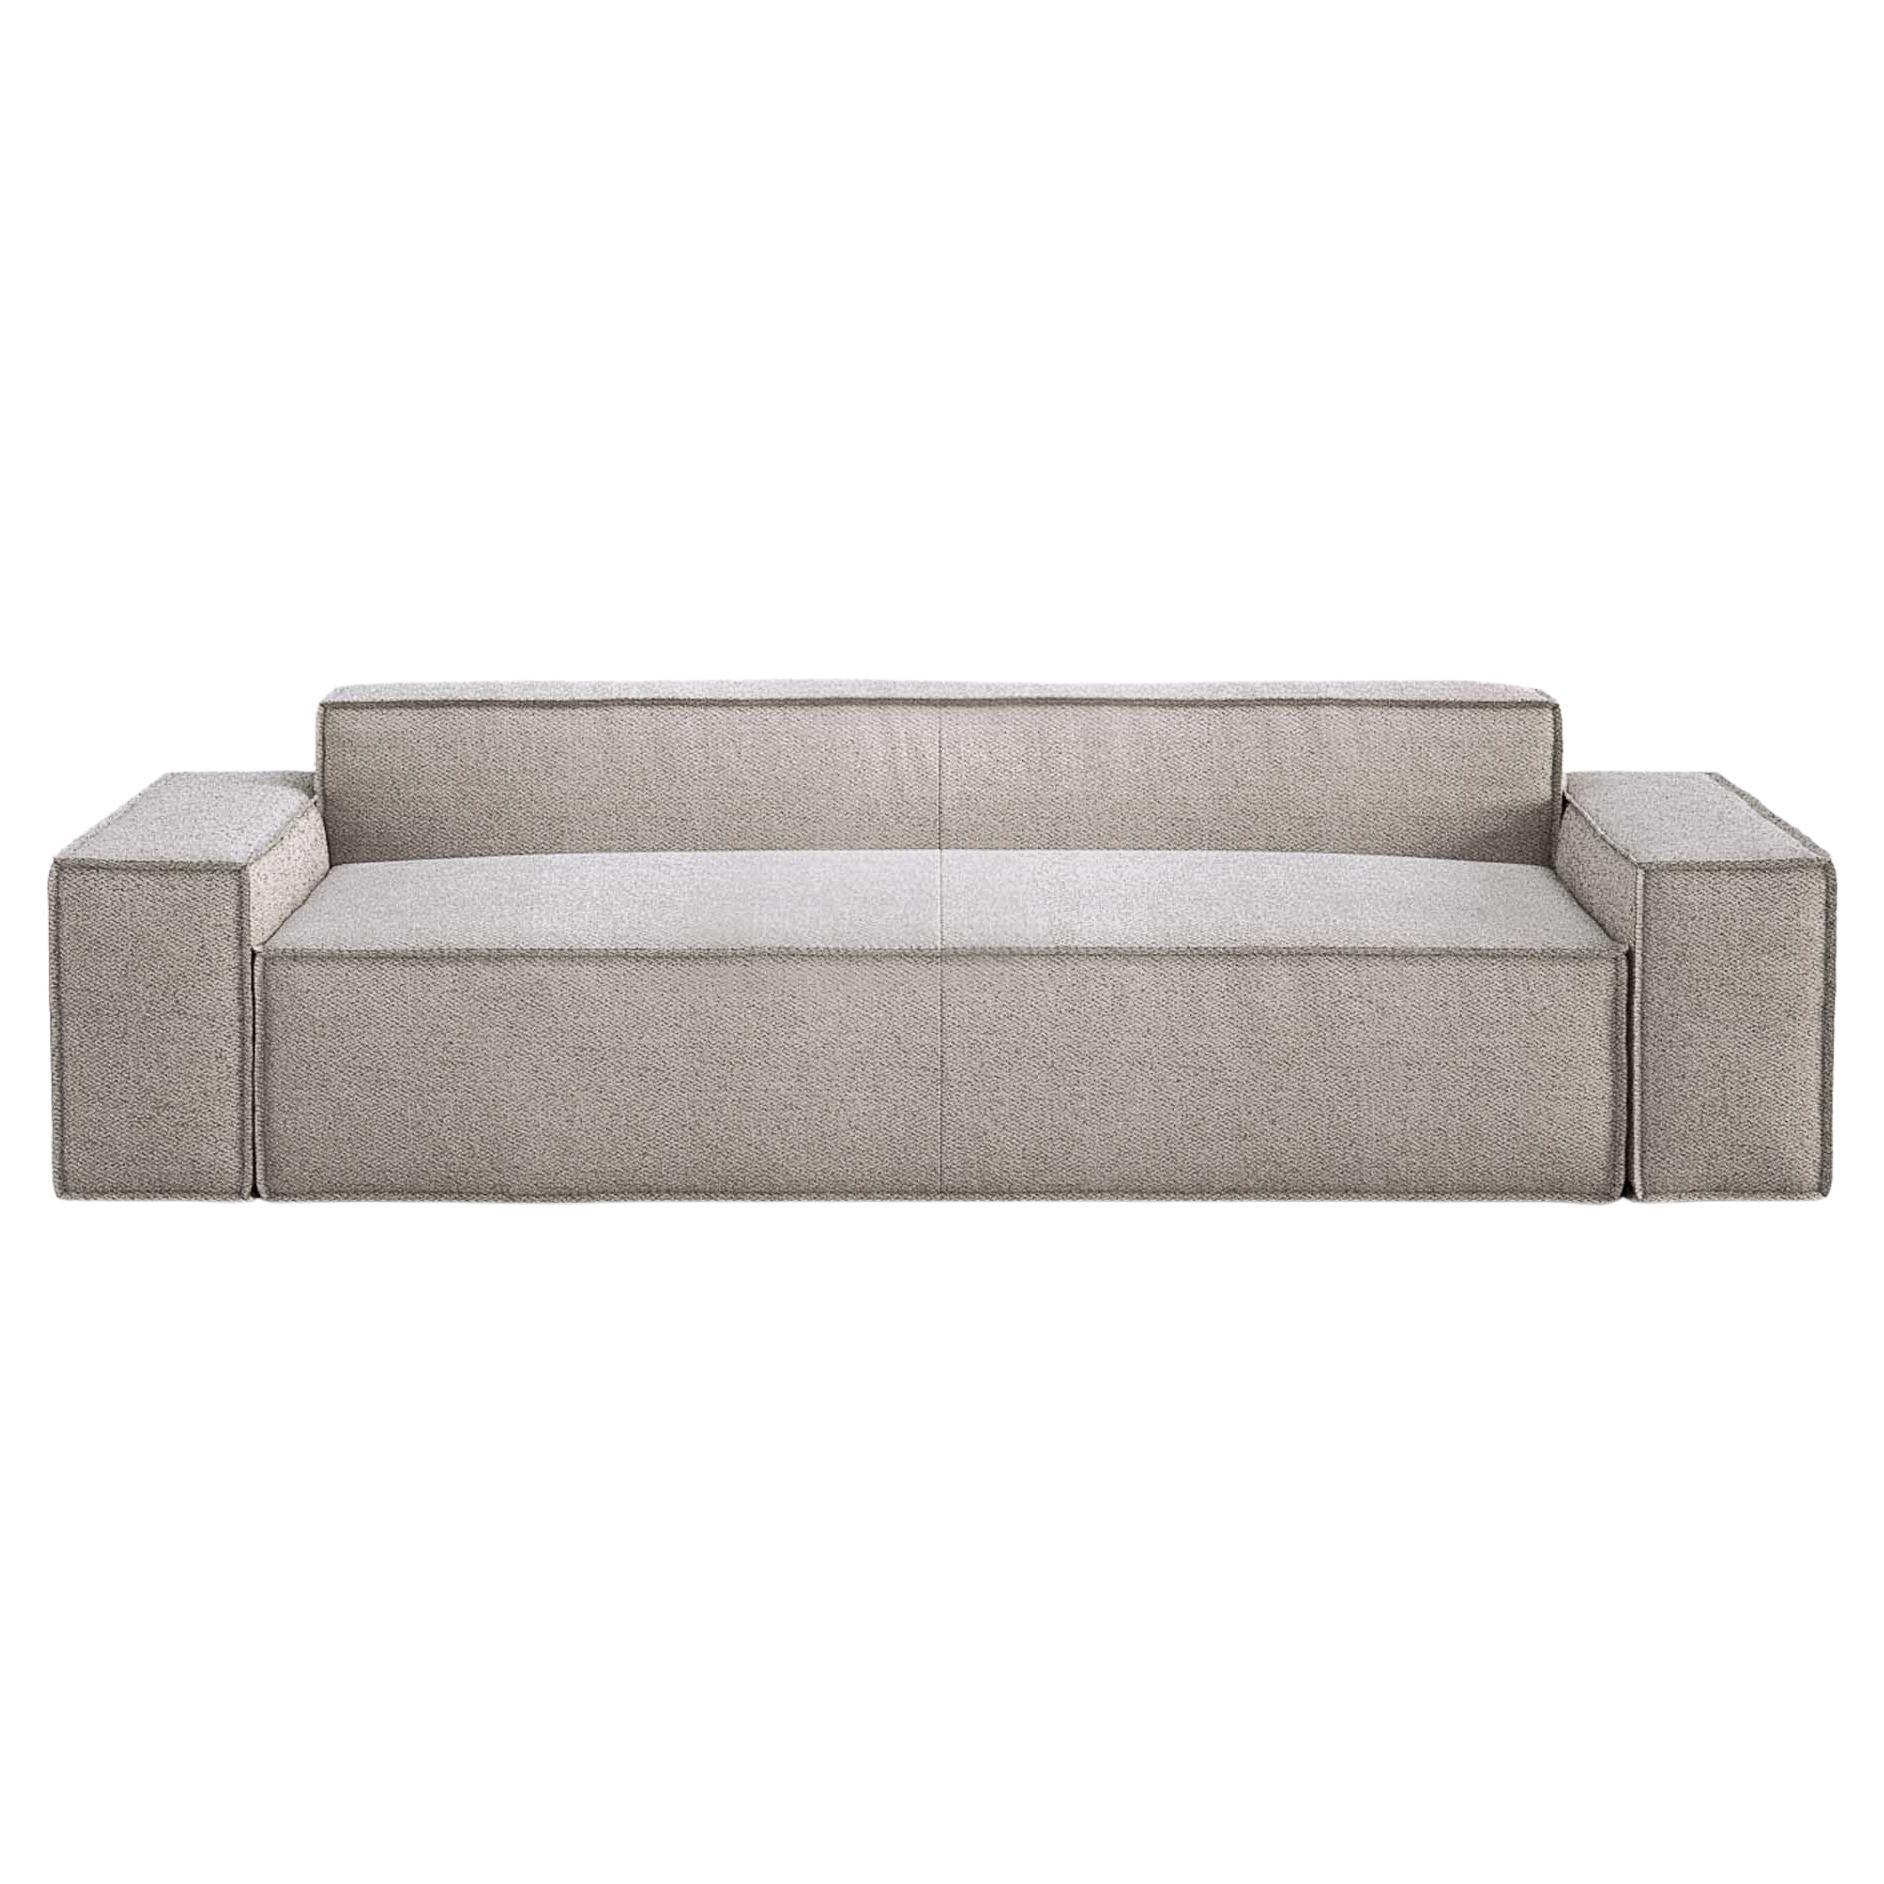 Contemporary Loveseat Sofa 'Davis' Model 060, Brera 850, White 01 For Sale